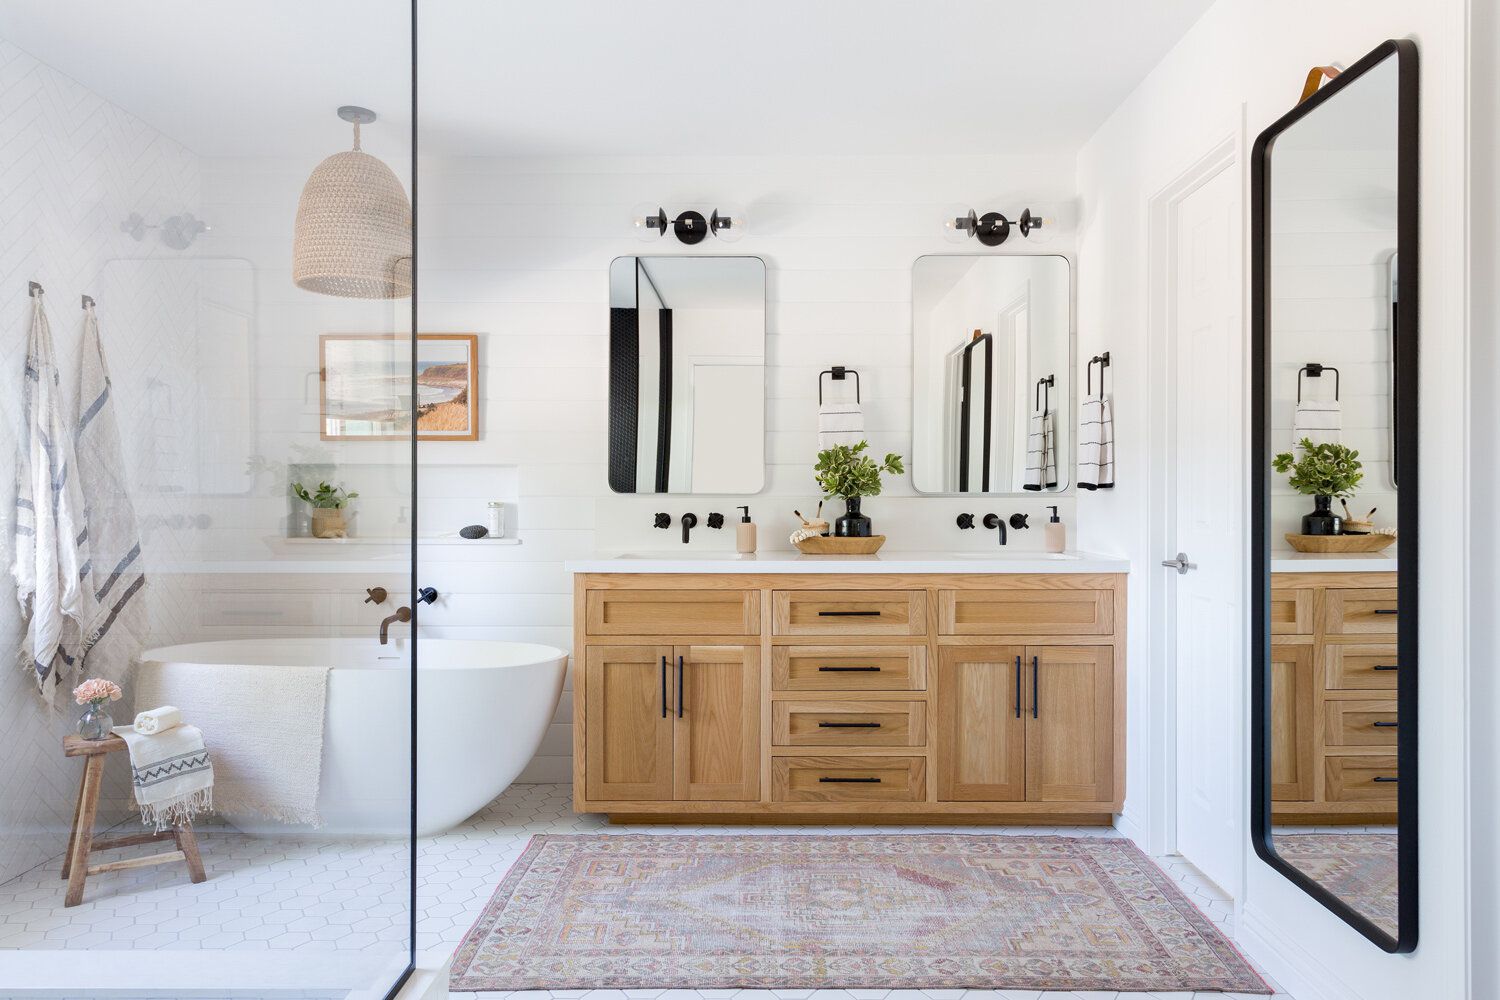 59 Bathroom Decor Ideas for a Quick Makeover